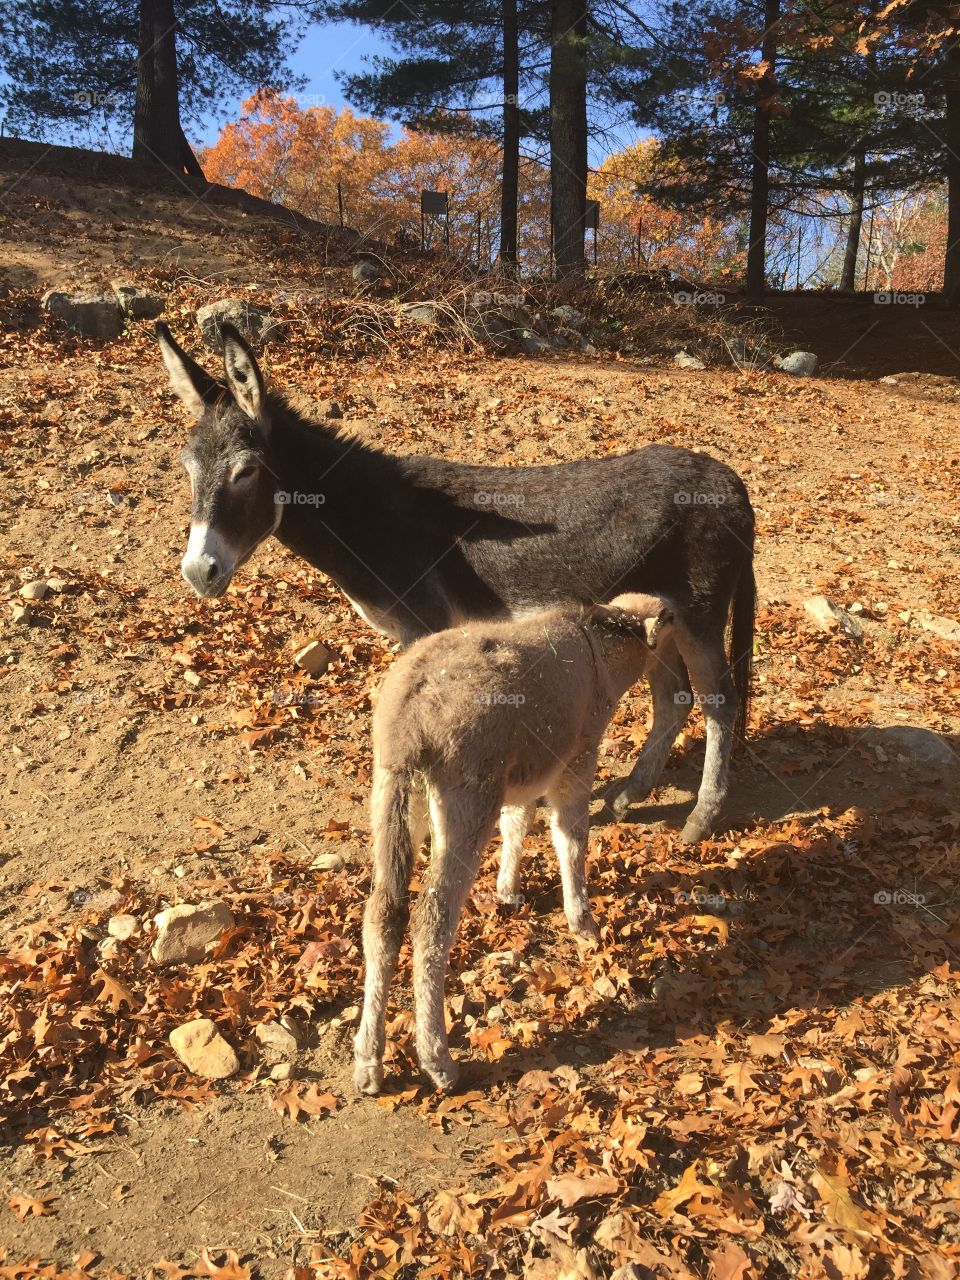 Mother donkey nursing her baby. 